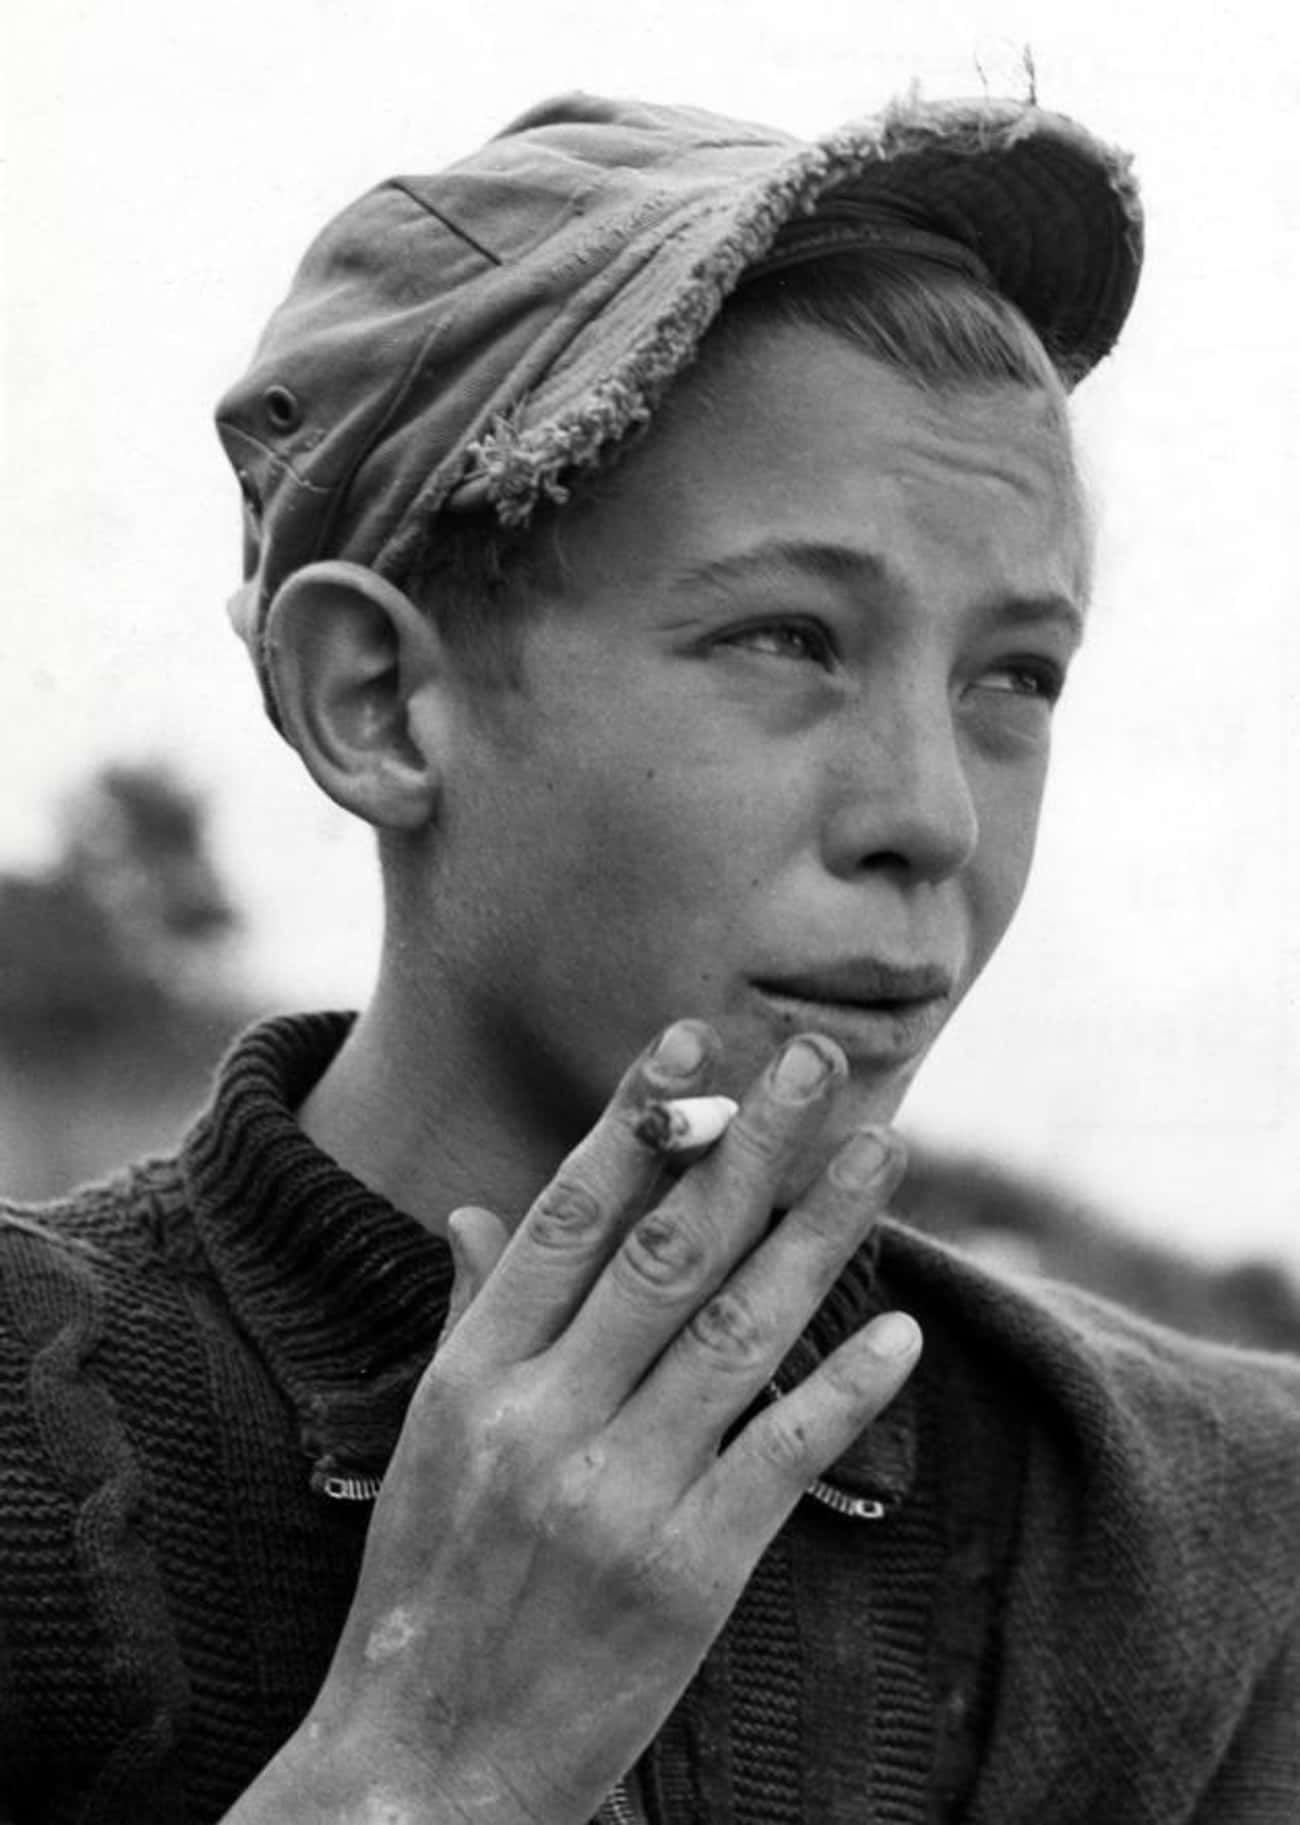 Фото мальчика с сигаретой в кепке